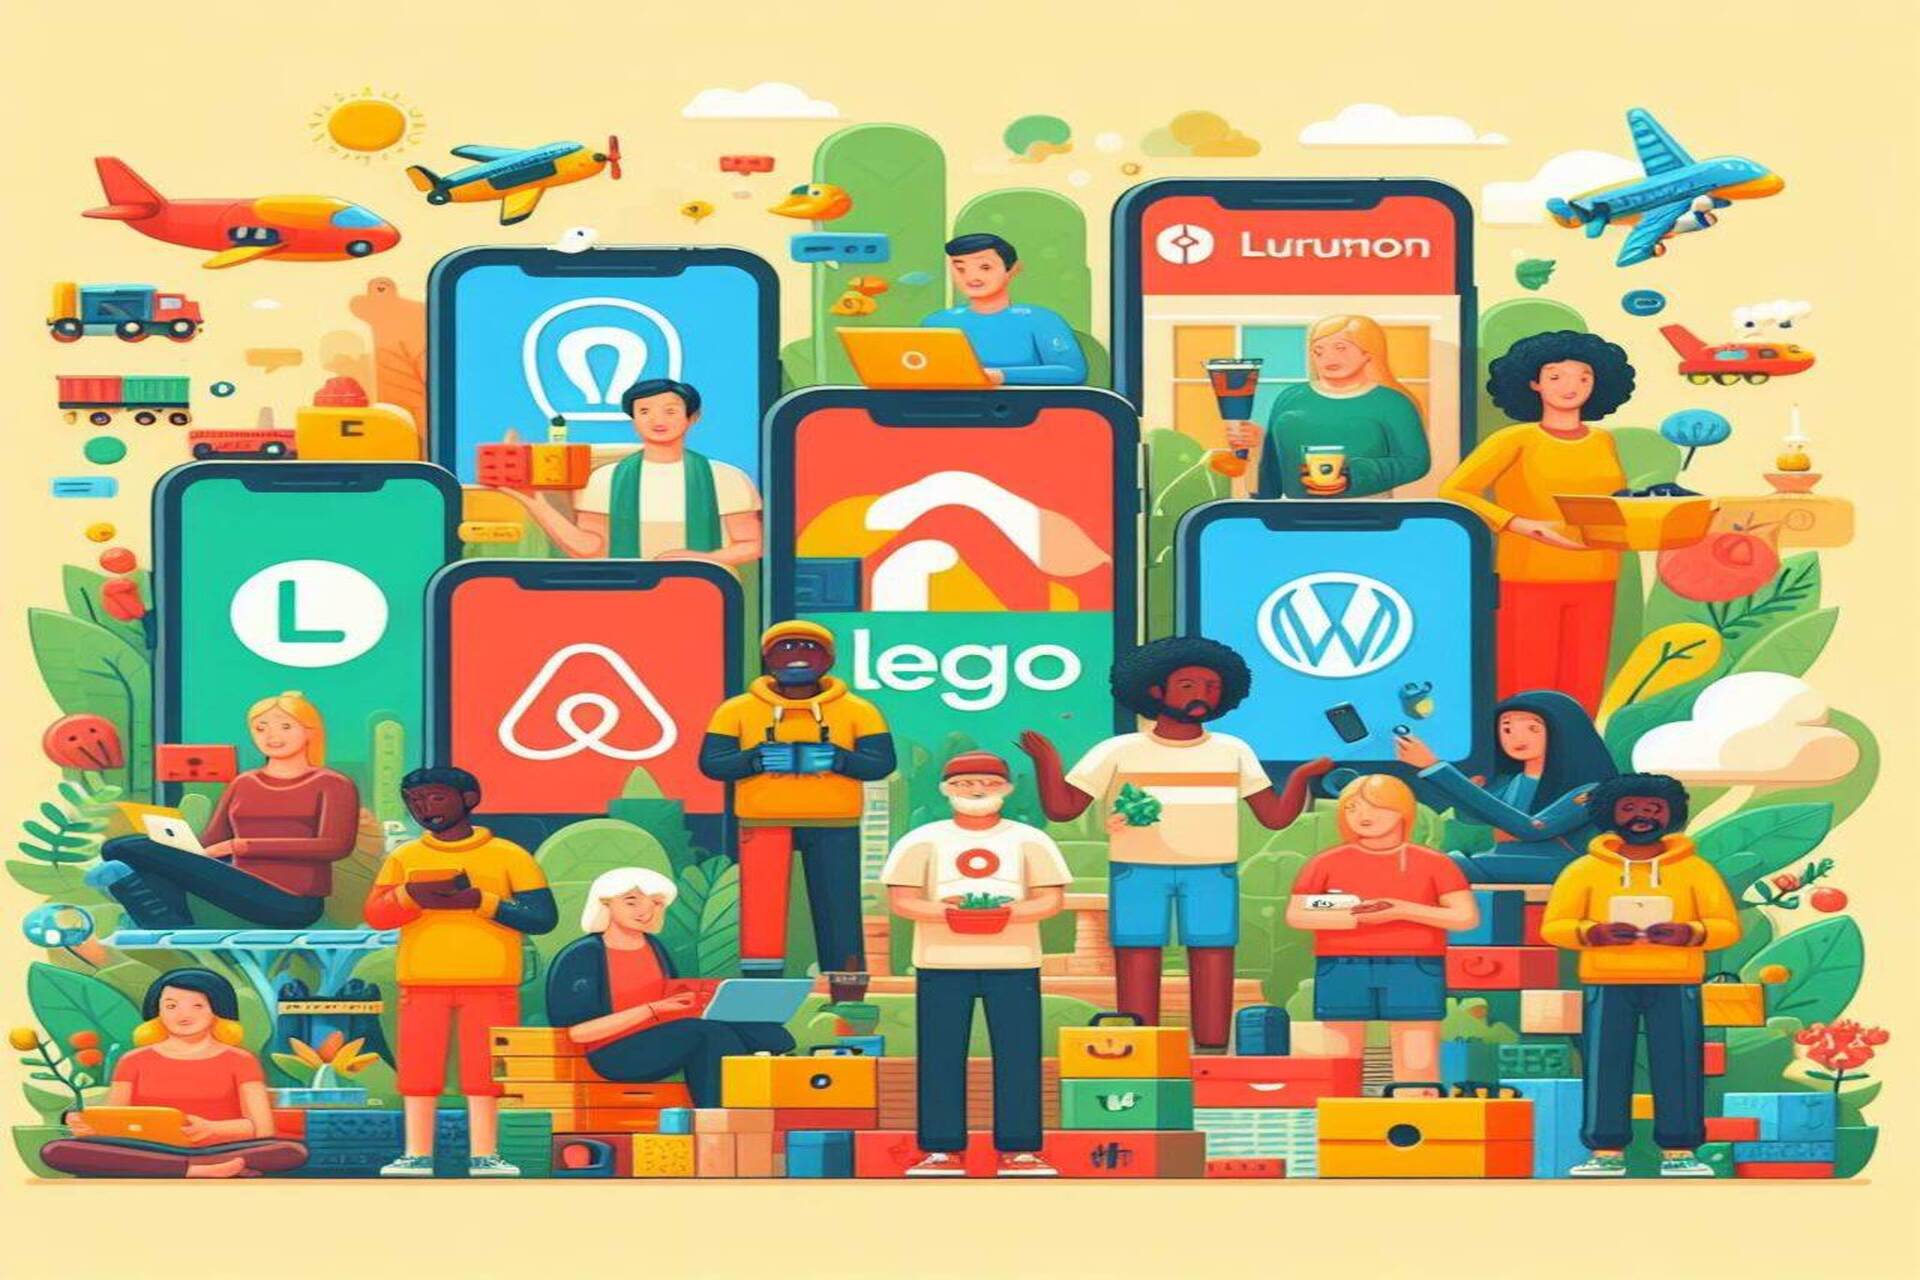 Κοινότητα και πλήθος: Airbnb, Etsy, GitHub, Stack Overflow, Lego Ideas, WordPress, Linux και Lululemon είναι τέλεια παραδείγματα εφαρμογών "κοινότητας"